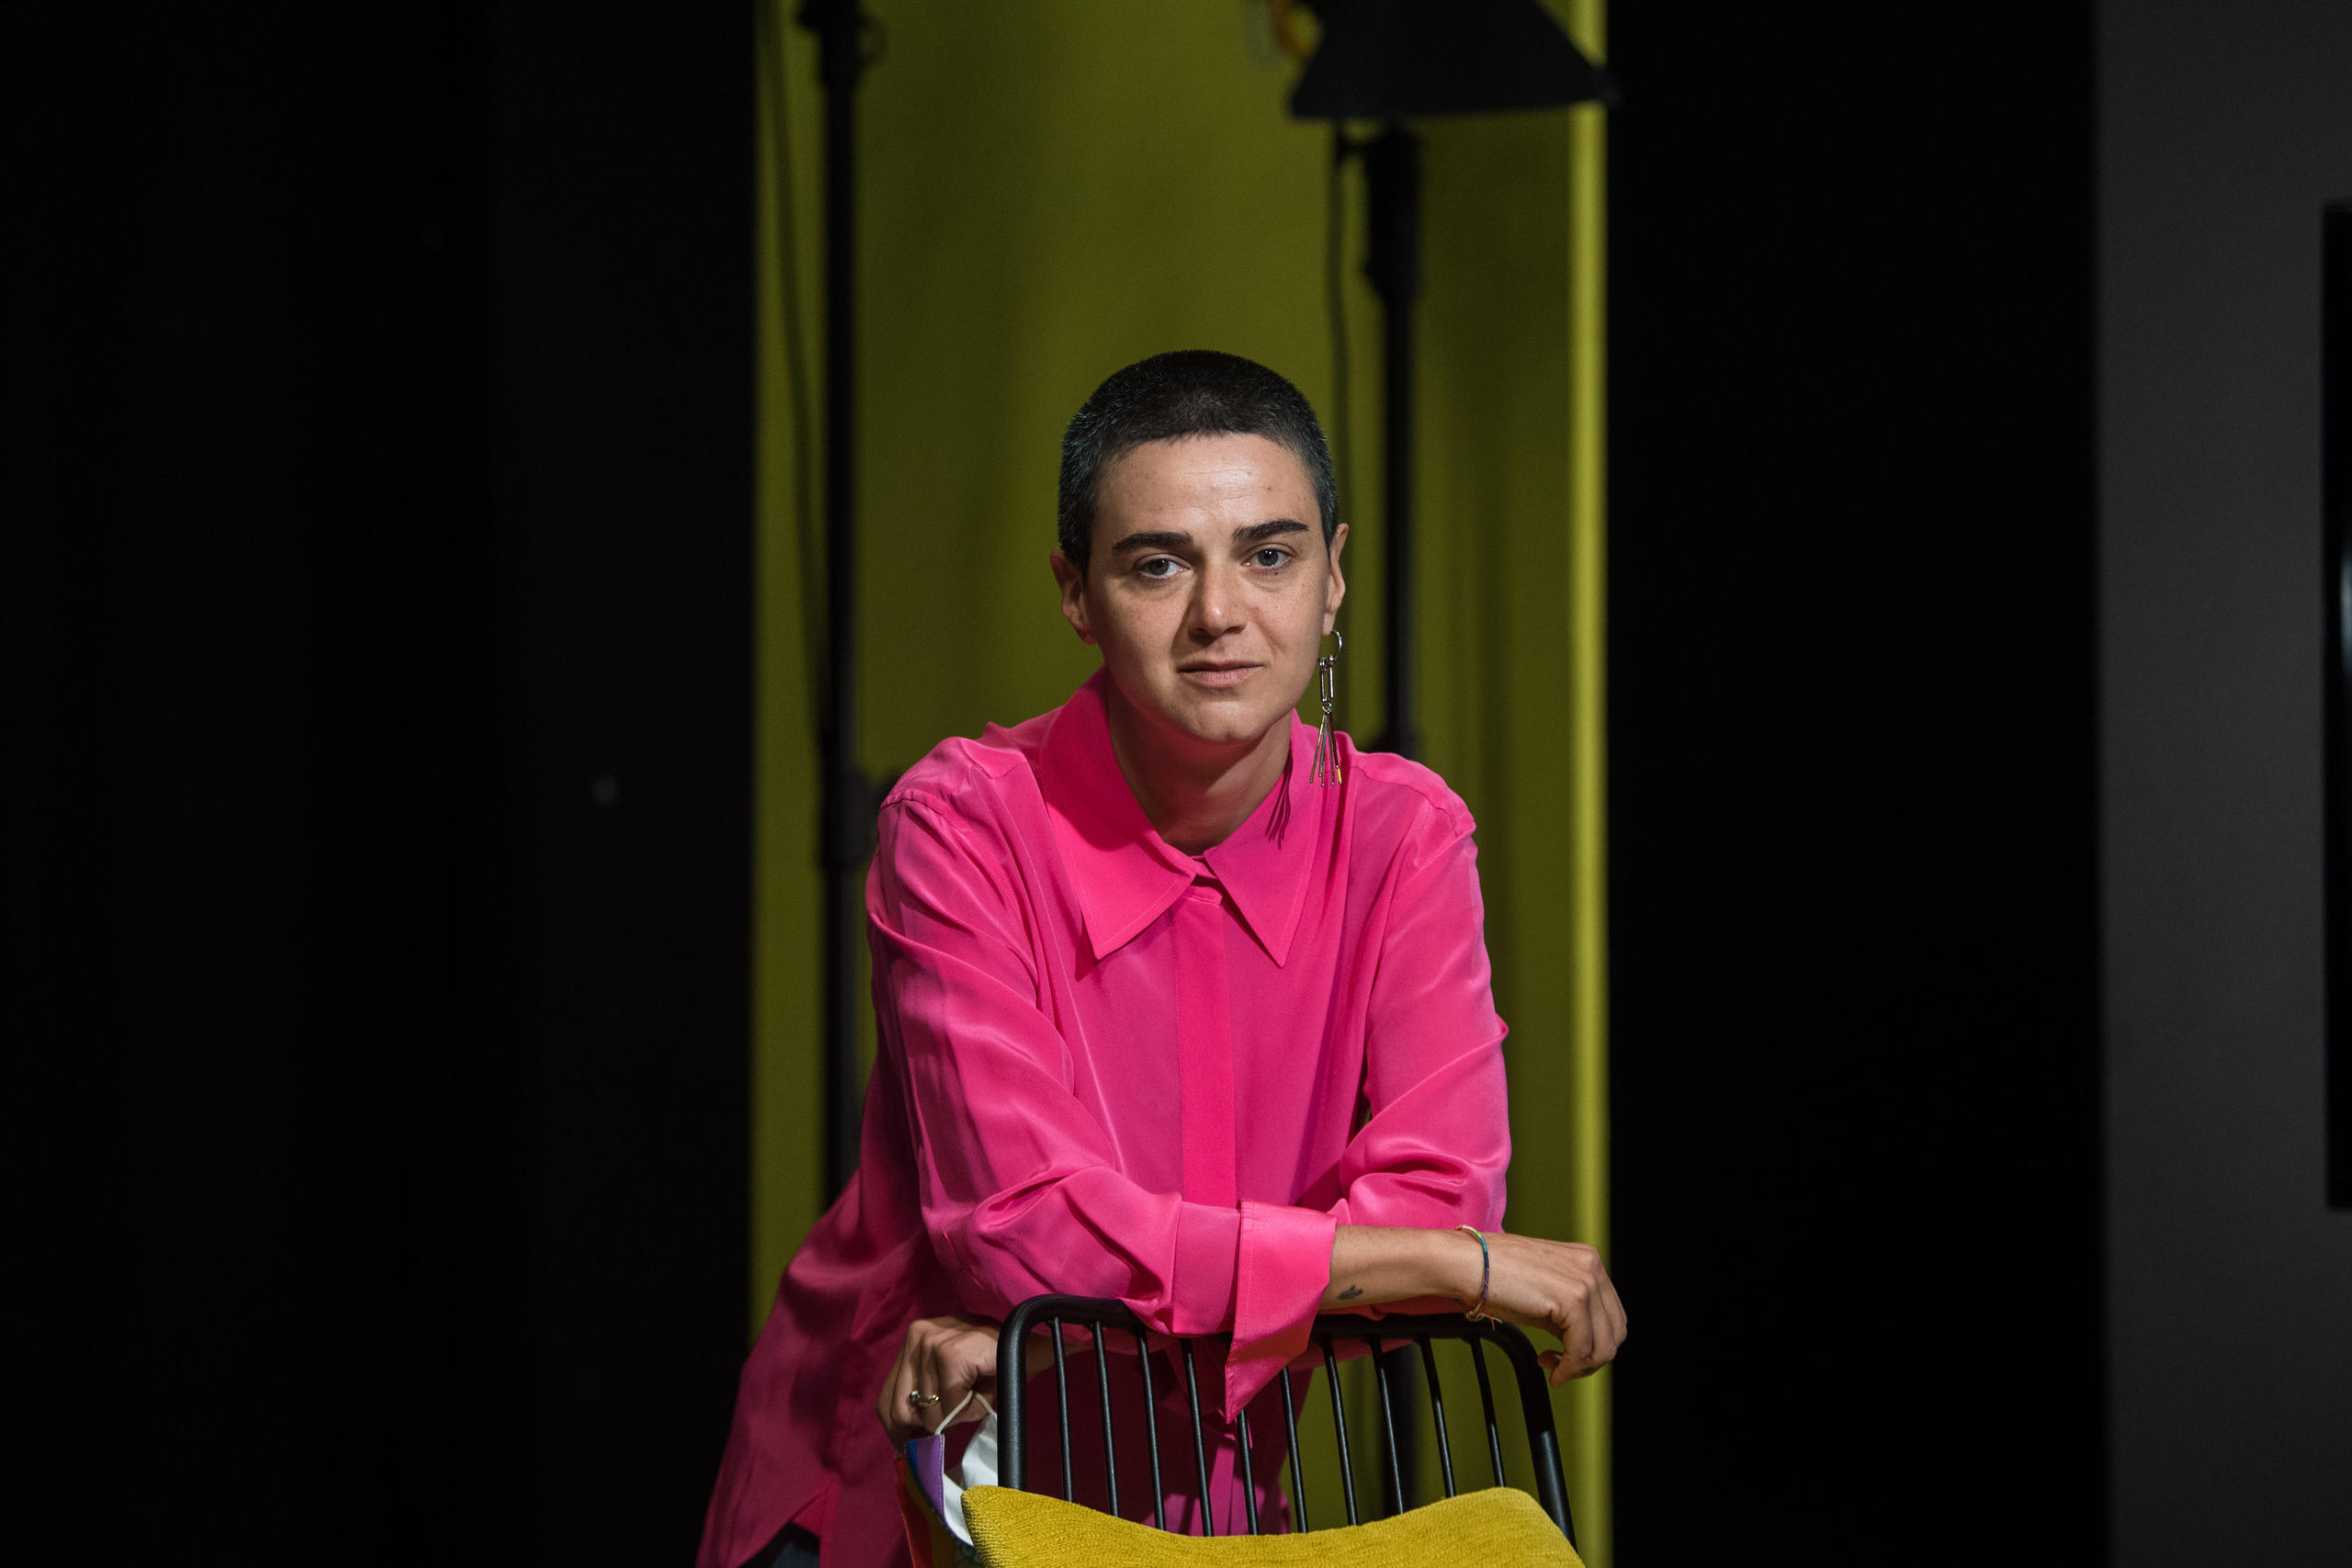 Film director Elene Naveriani poses at Locarno Film Festival 2021